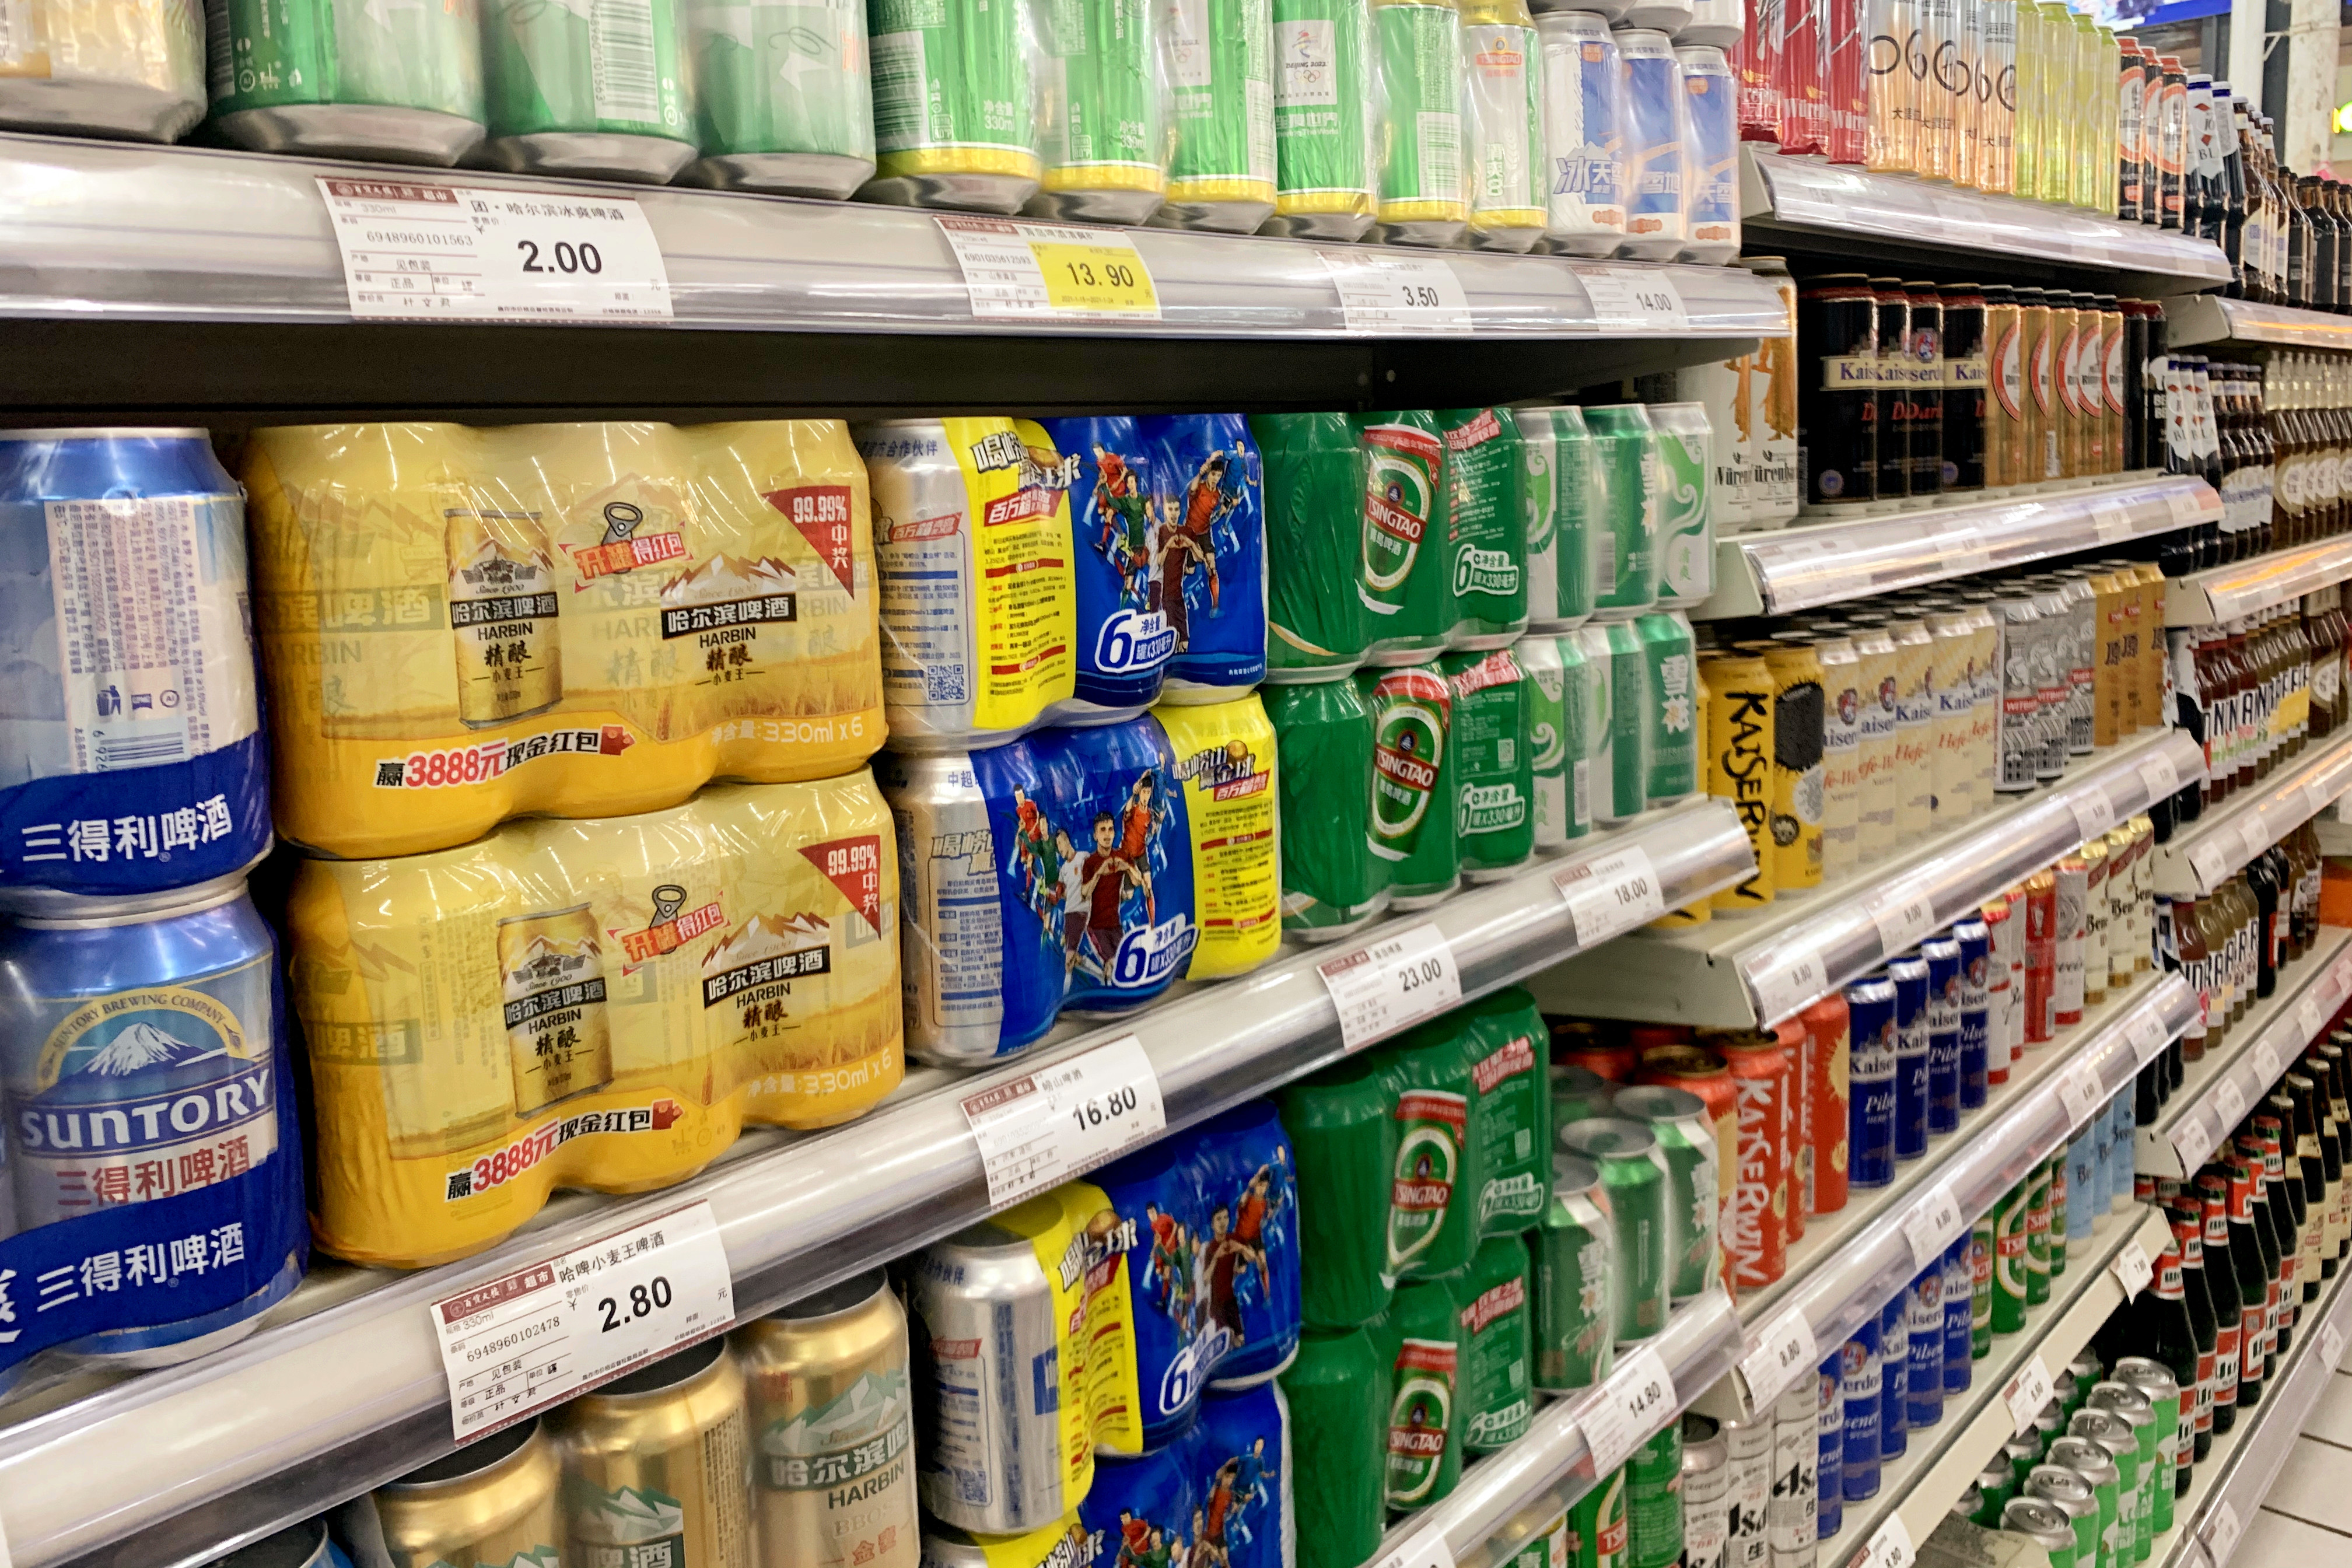 超市买啤酒，8种用料扎实，喝着顺口的好啤酒，过年买几箱慢慢喝